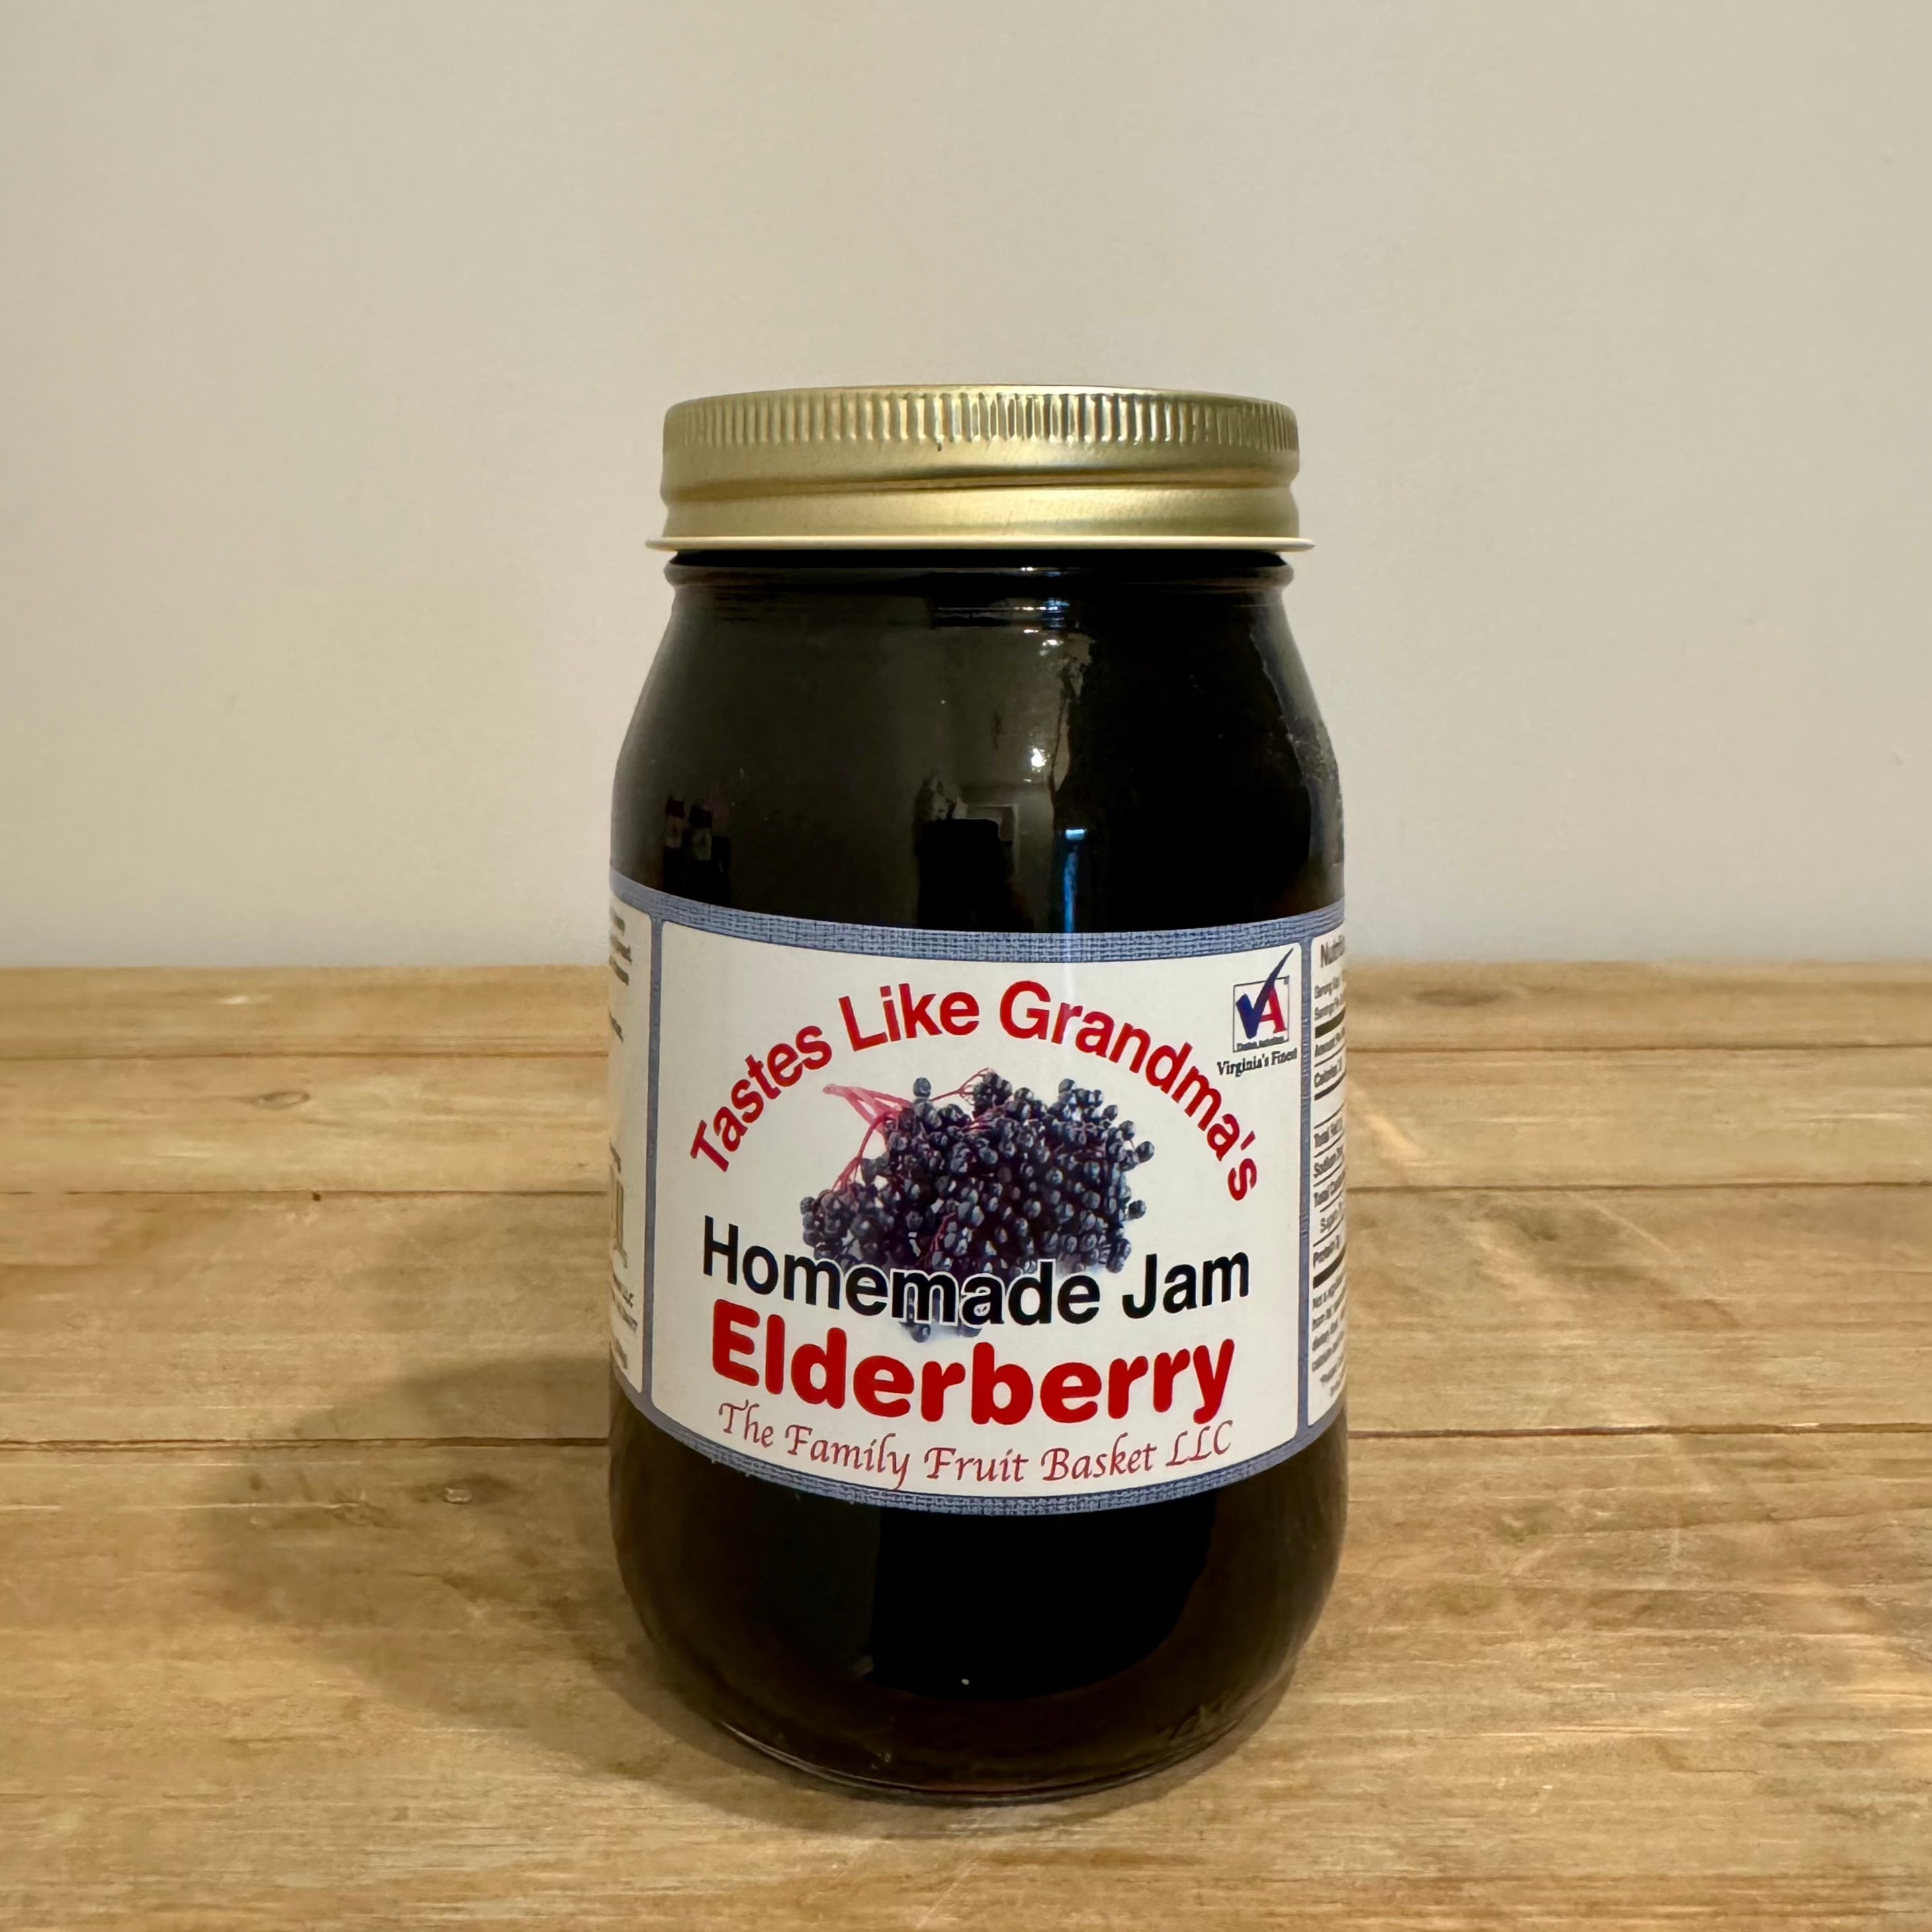 Tastes Like Grandma's Elderberry jam.